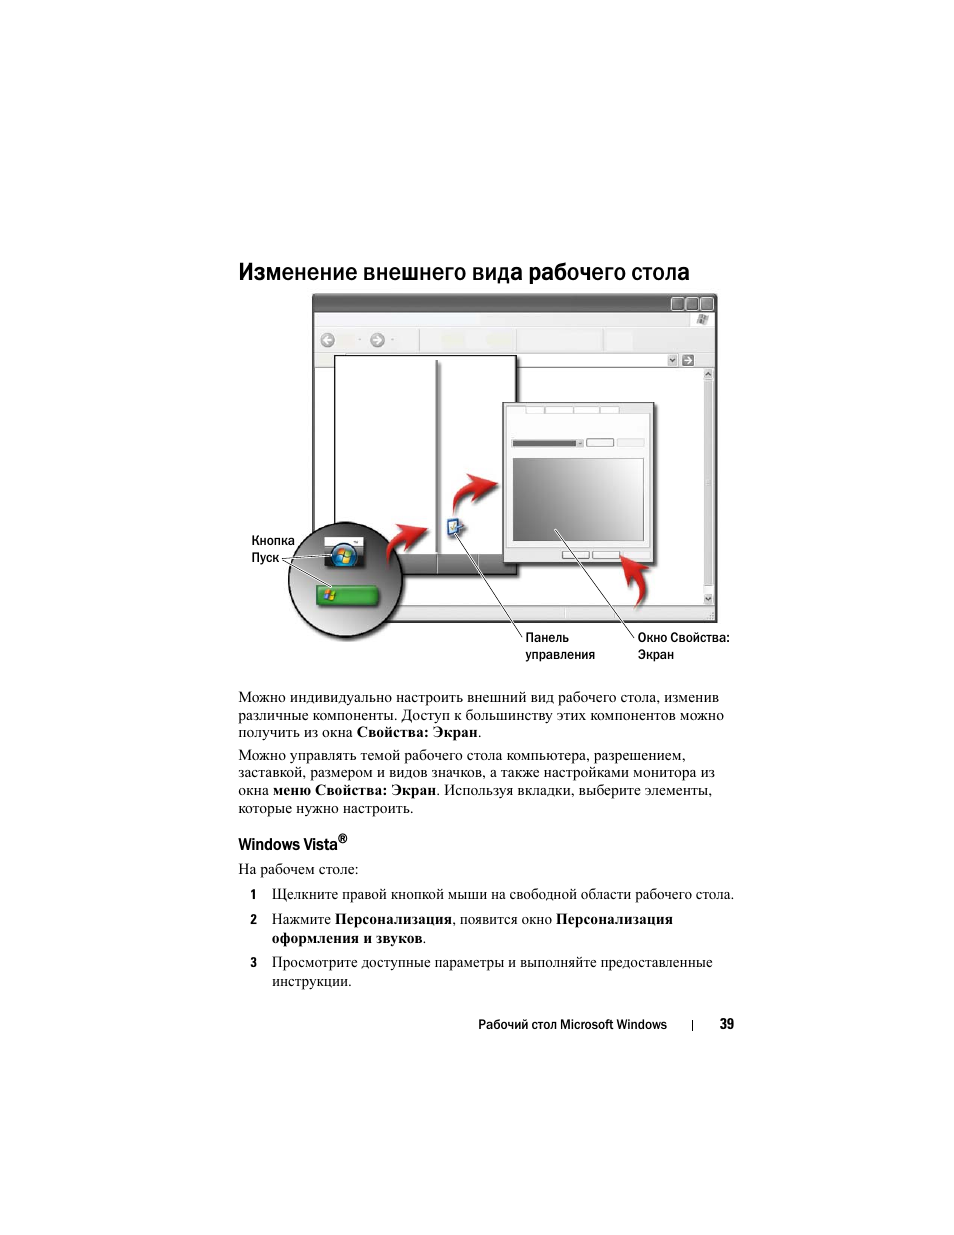 Изменение внешнего вида рабочего стола, Windows vista | Инструкция по эксплуатации Dell Inspiron 560 | Страница 39 / 384